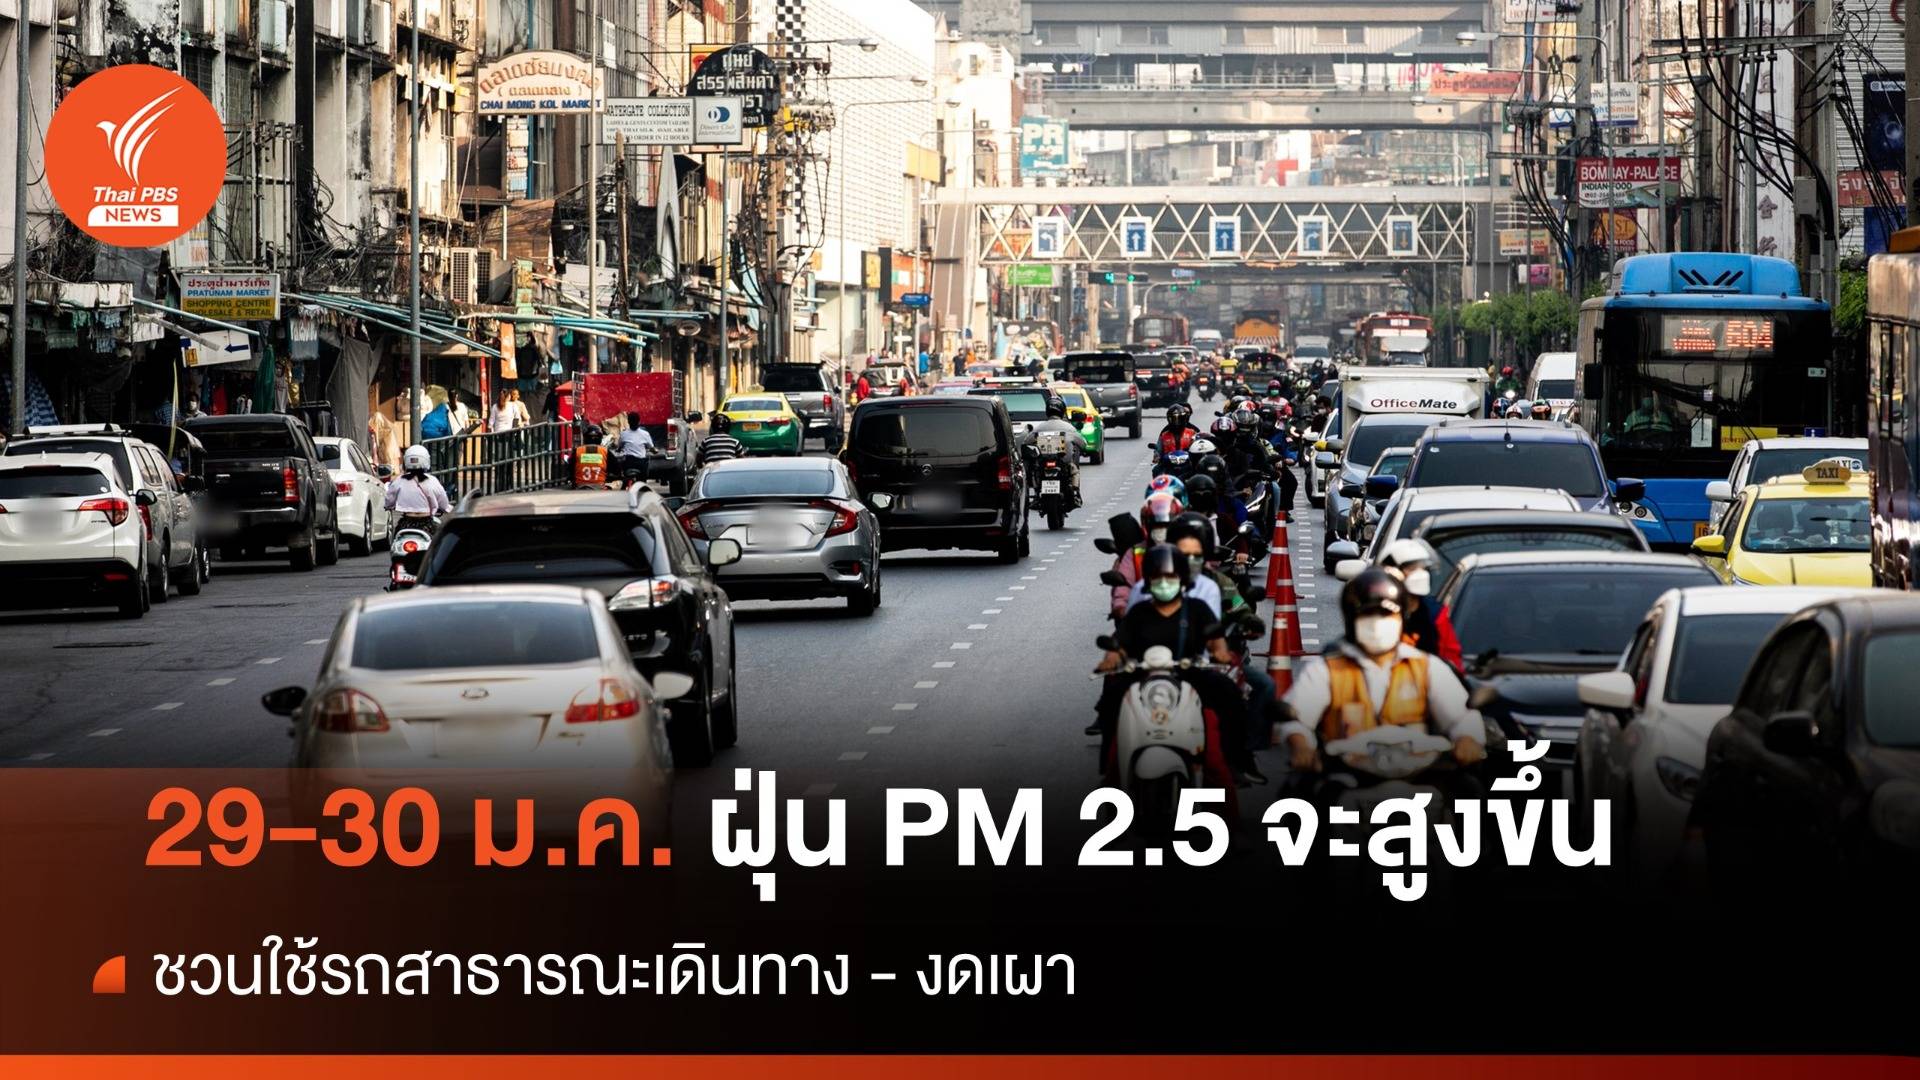 เตือน 29-30 ม.ค.นี้ ฝุ่น PM 2.5 จะสูงขึ้น ชวนคนกรุงฯ ใช้รถสาธารณะ-งดเผา